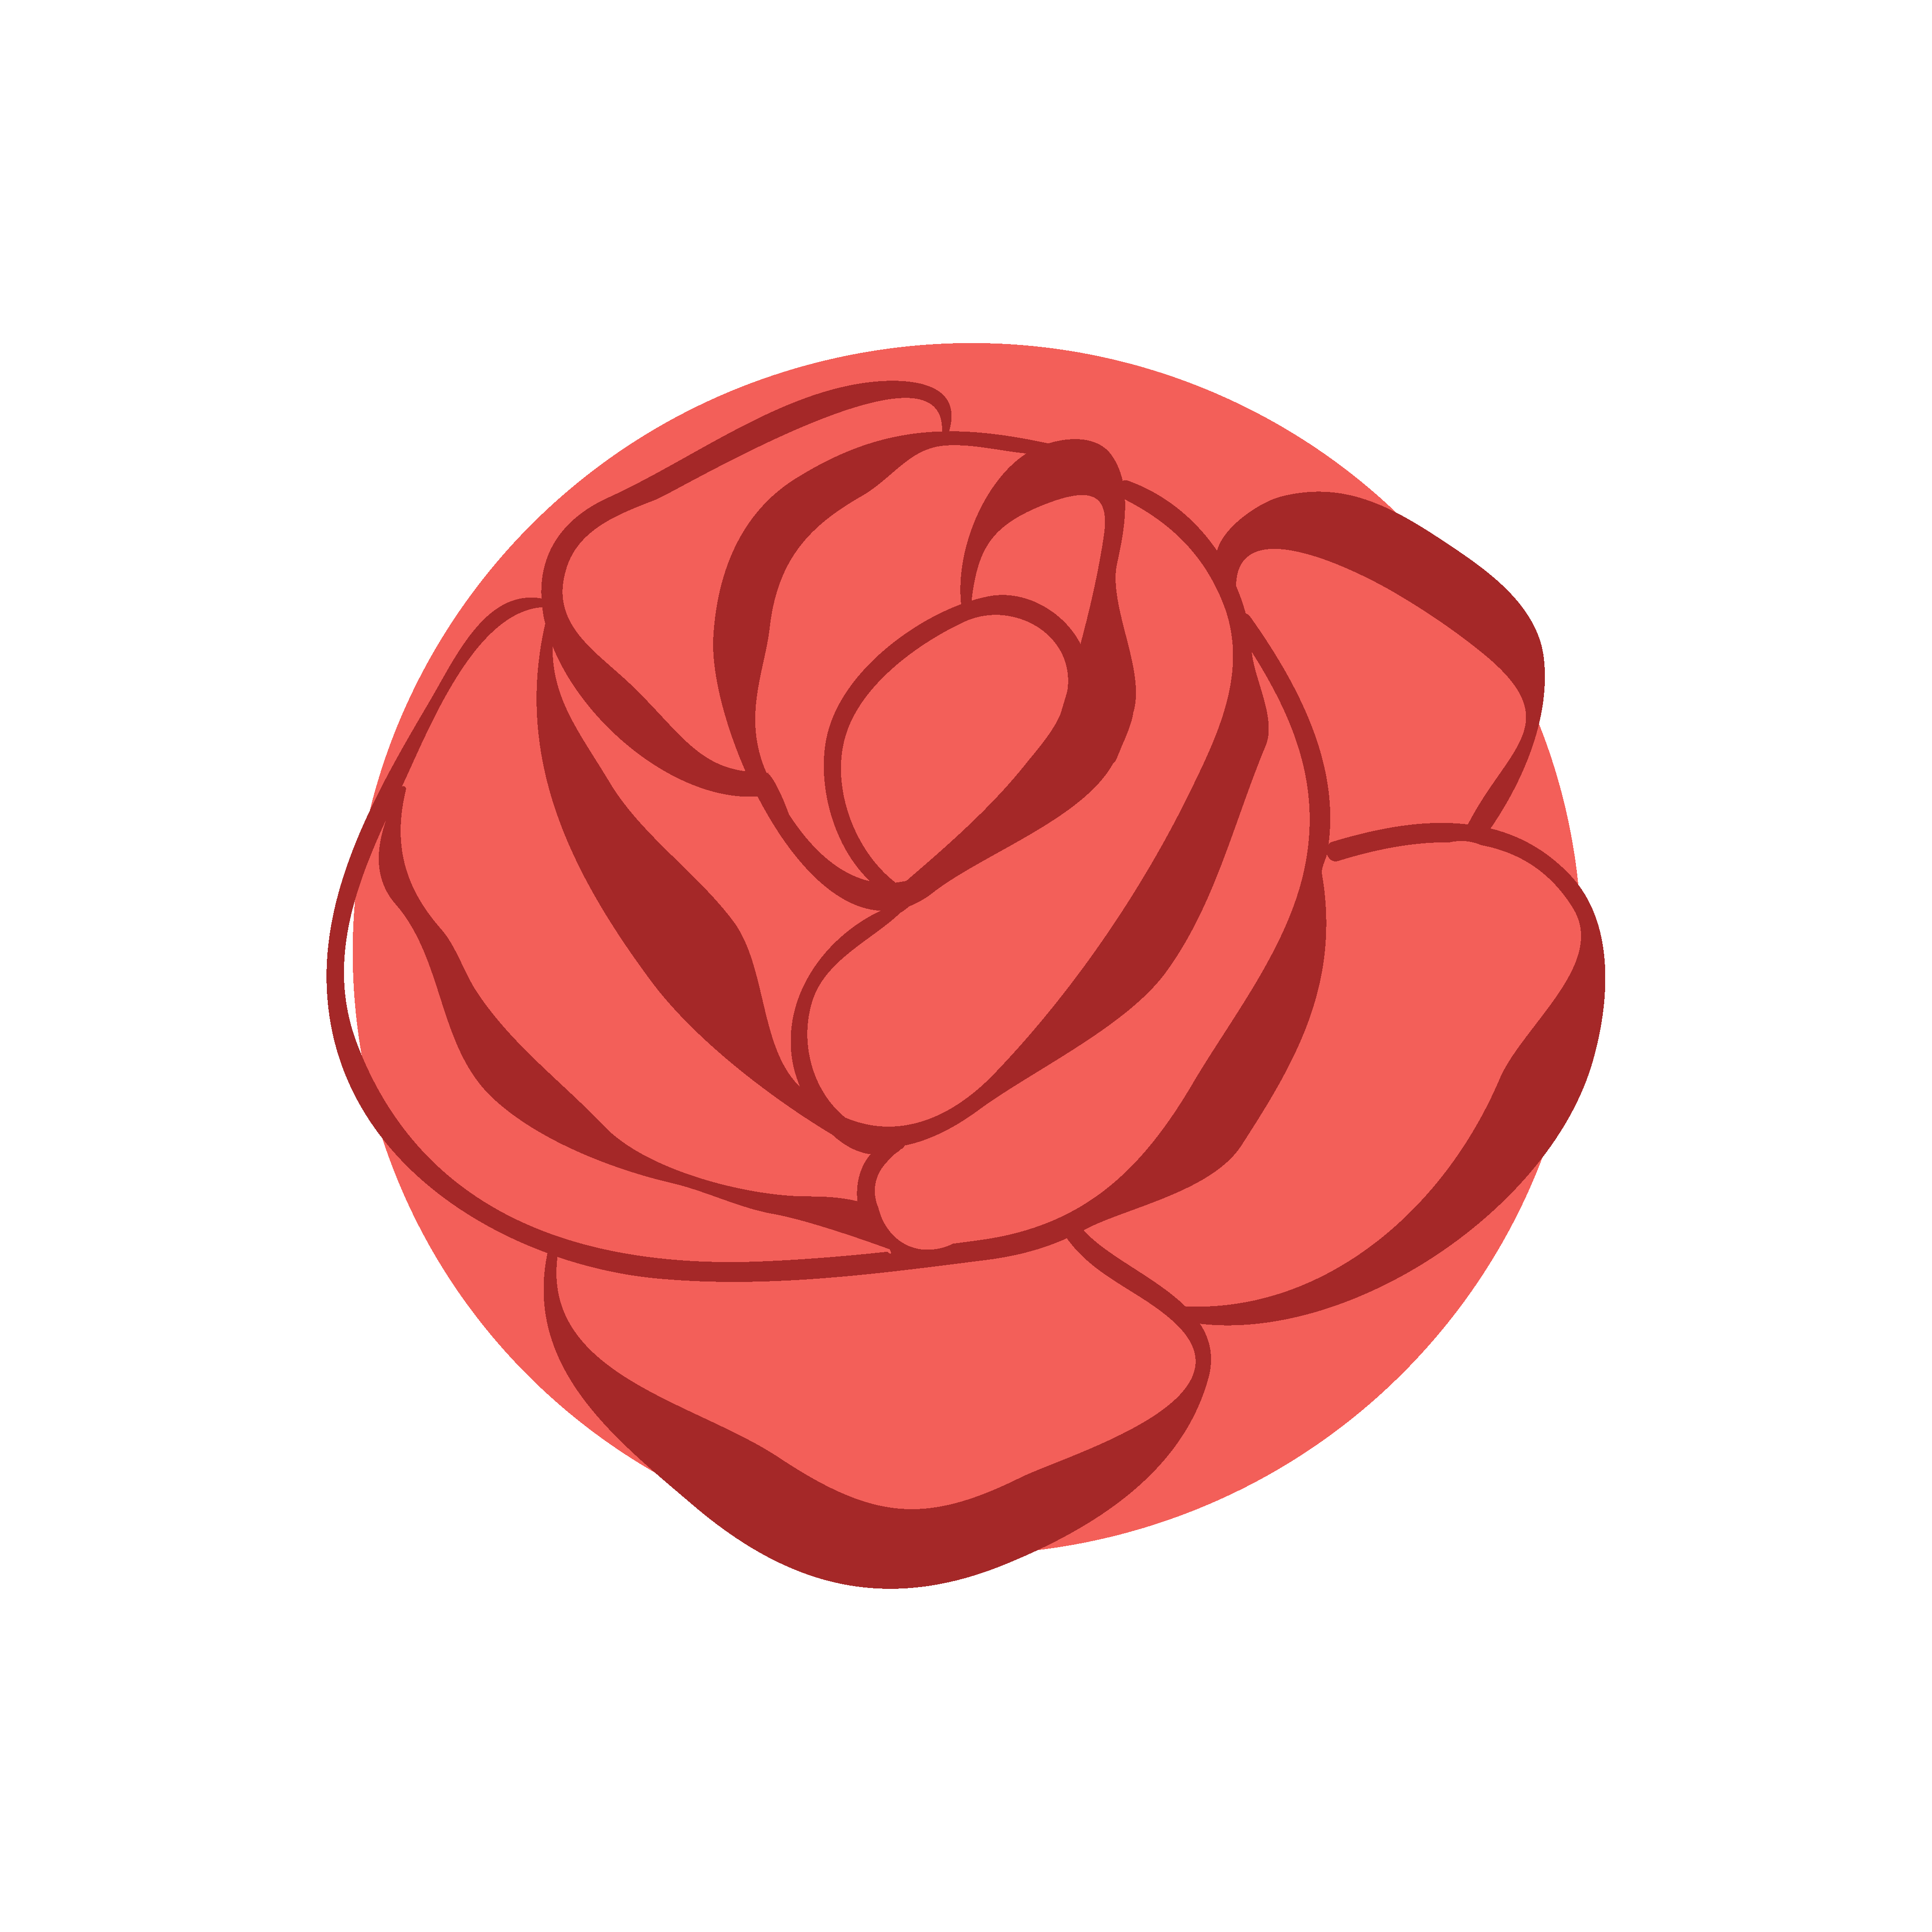 红色玫瑰花图案素材